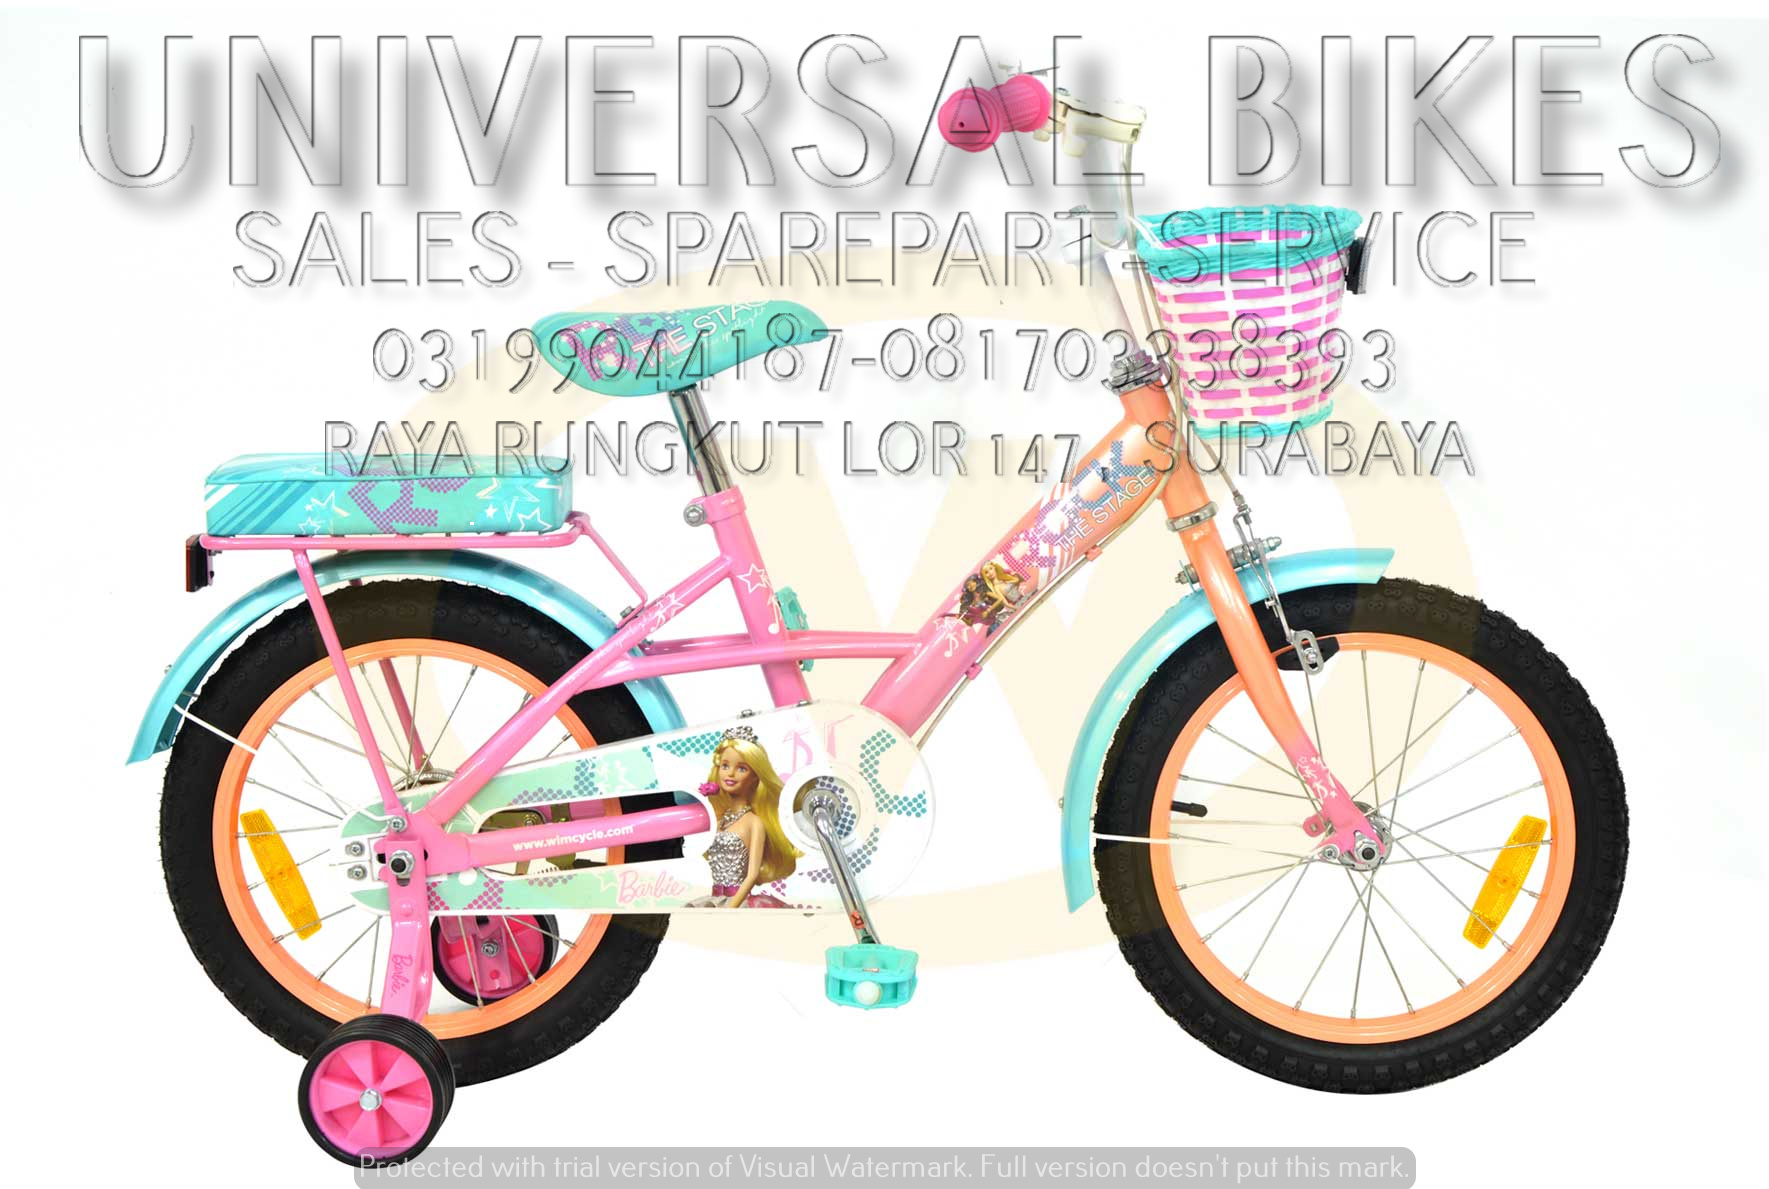  harga  sepeda  anak  wimcycle surabaya 081703338393 grosir 